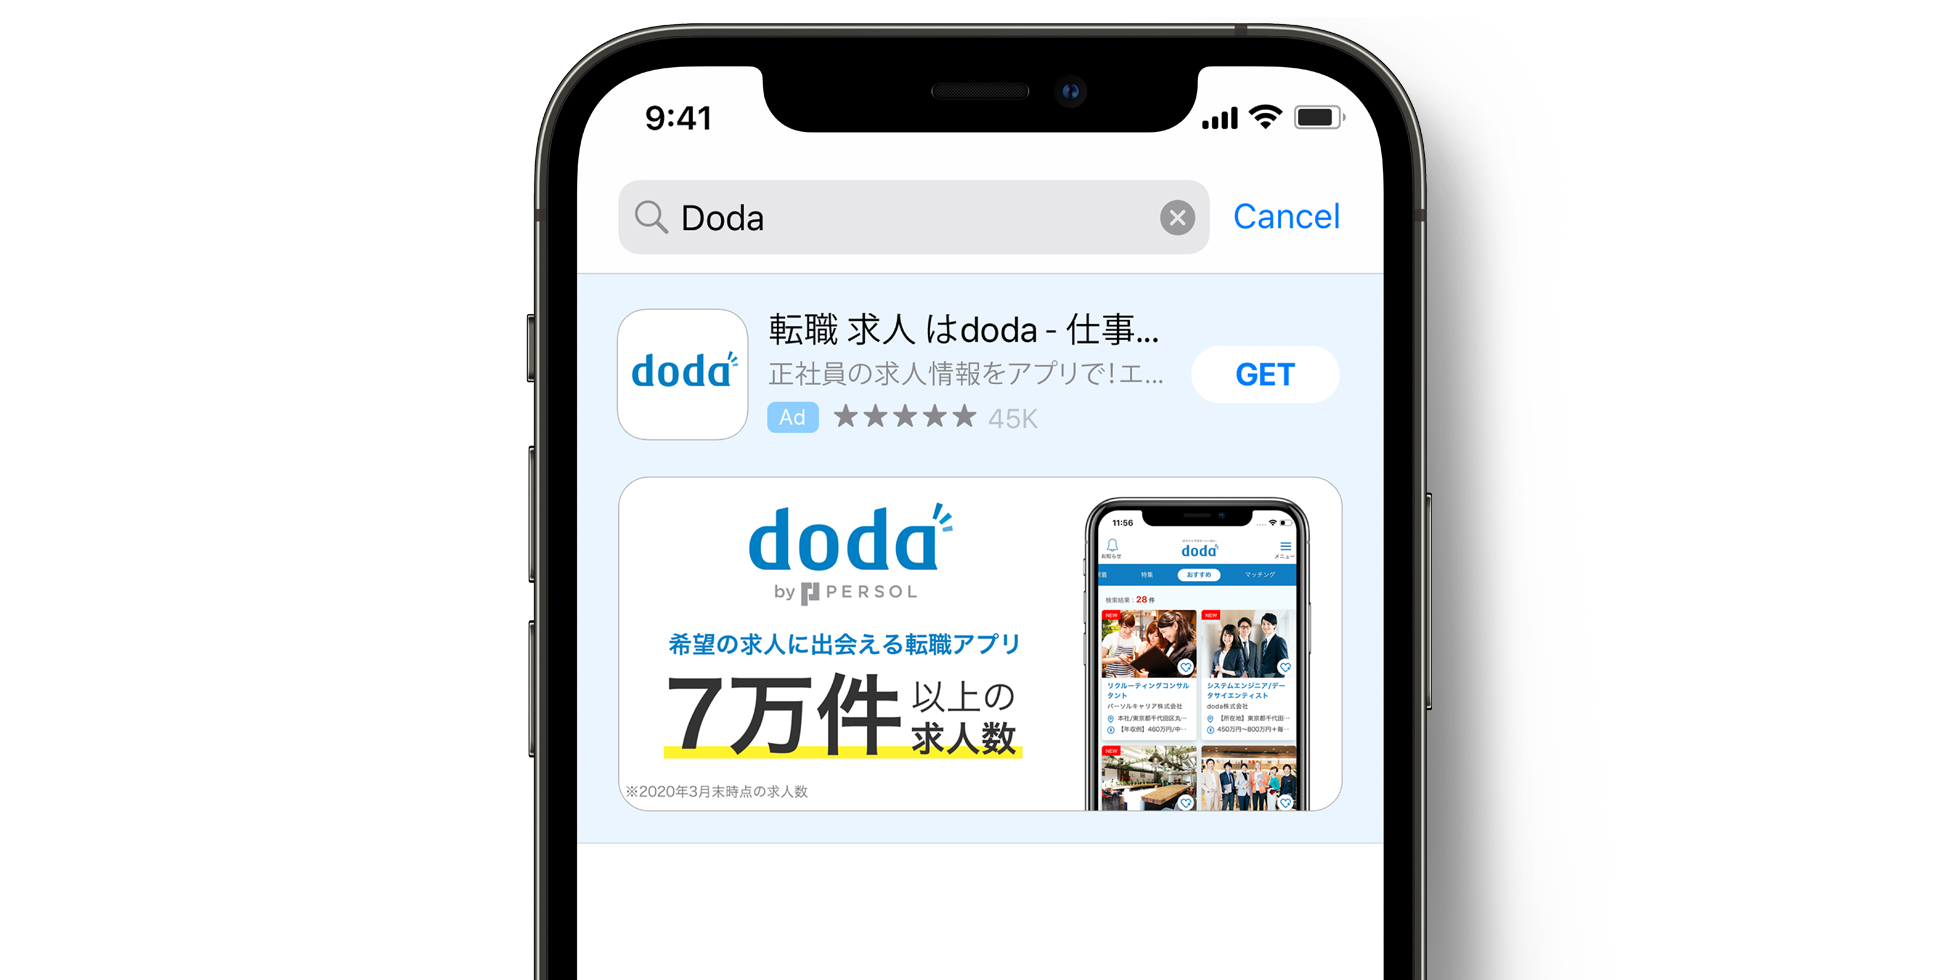 doda Anzeige im App Store